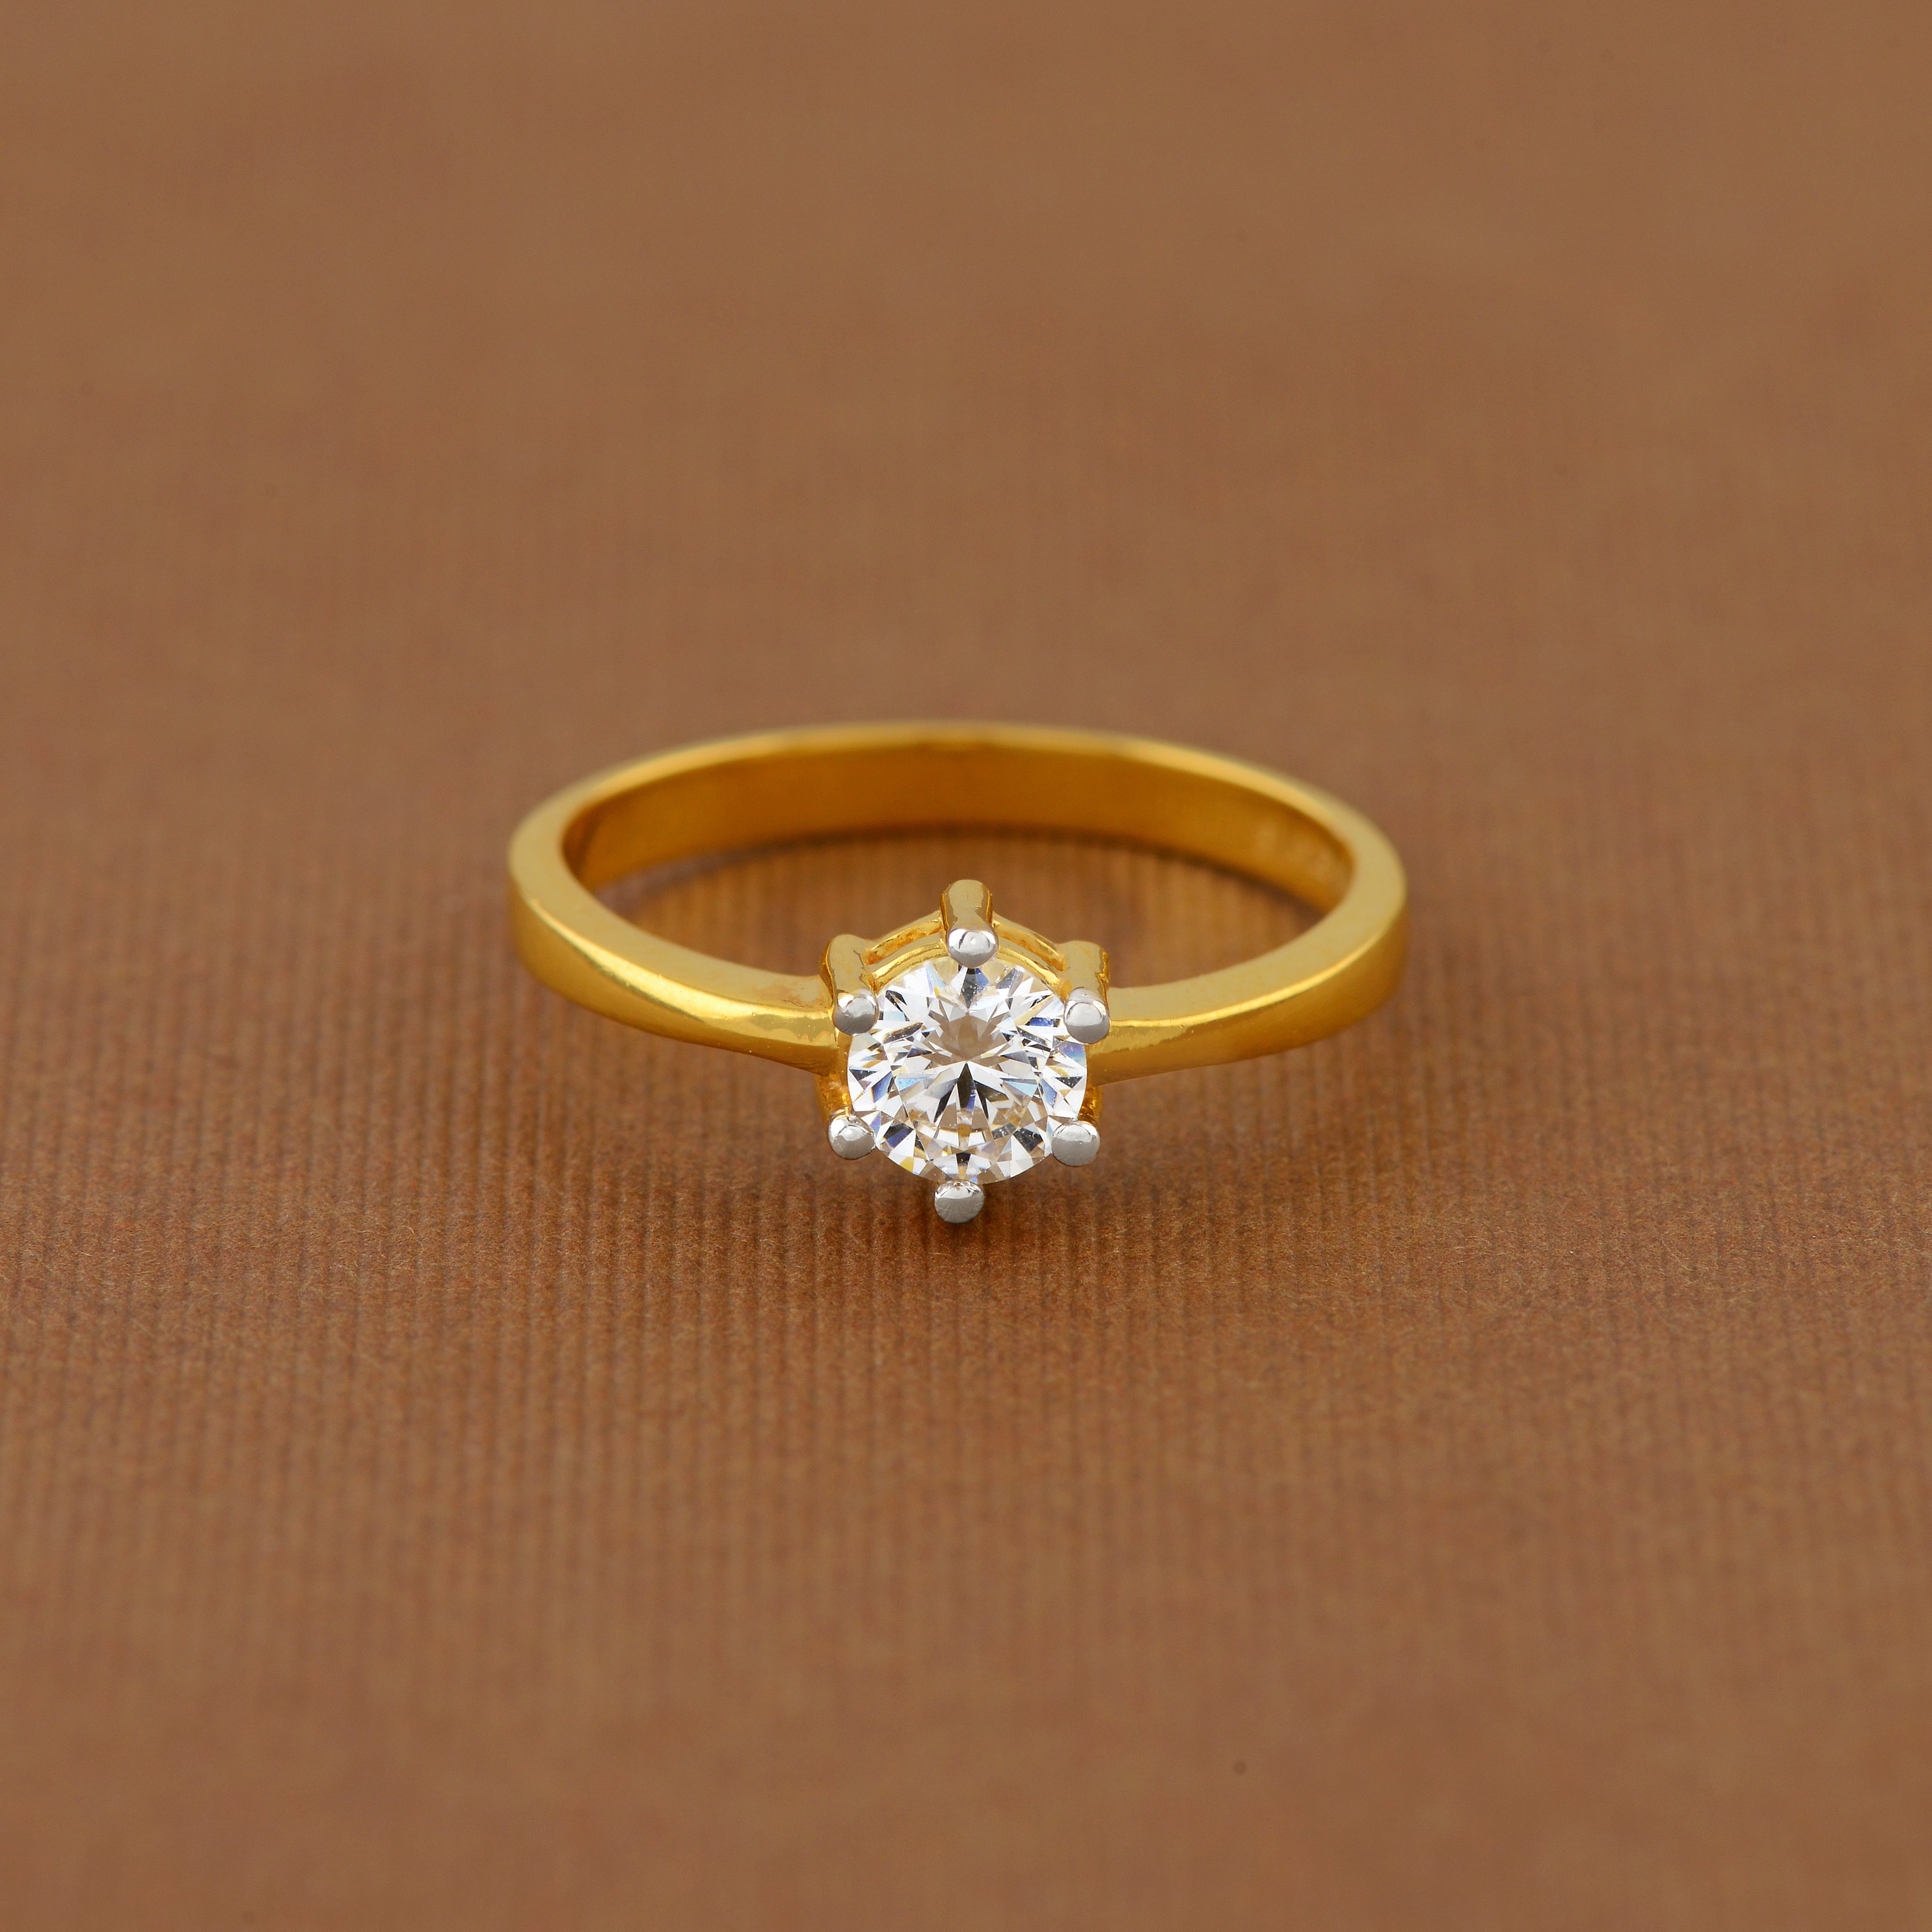 Black Diamond Ring for Women, White Gold Flower Ring ADLR166